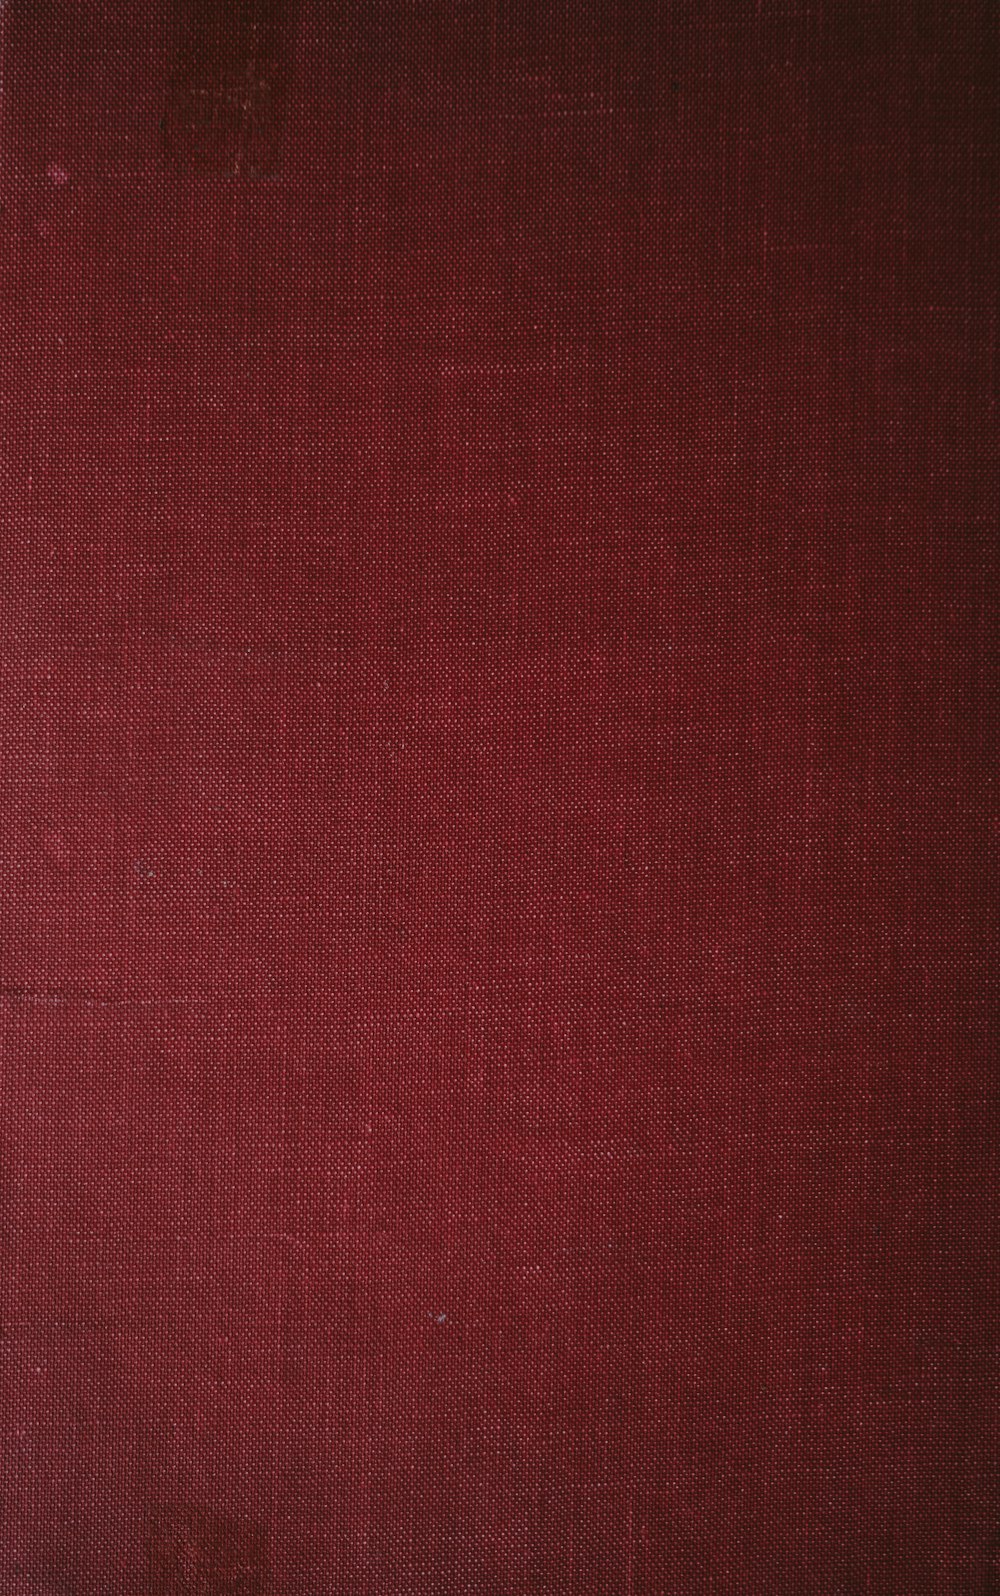 Un primer plano de la portada de un libro rojo